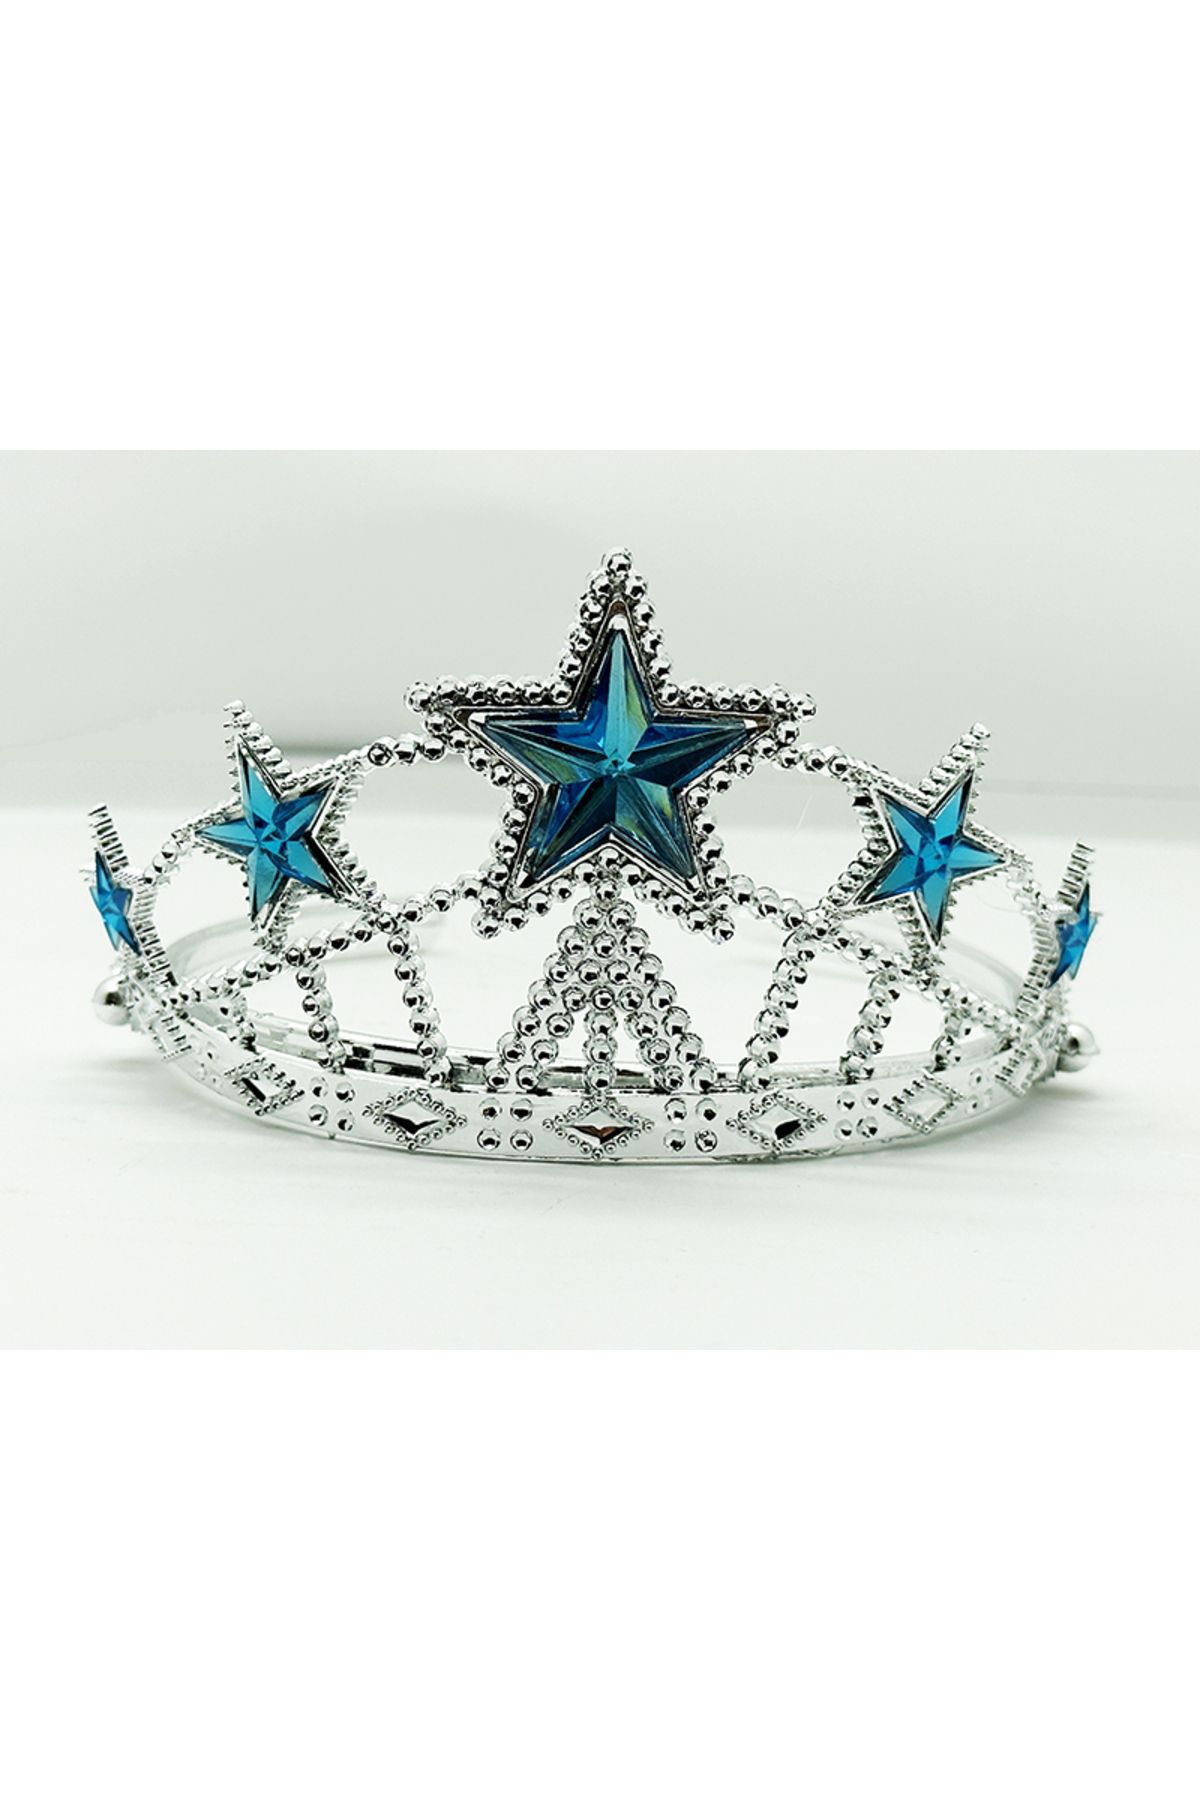 Genel Markalar Yıldız Şekilli Elsa Prenses Kraliçe Tacı Mavi Renk Çocuk Boy 5x17 cm (CLZ)